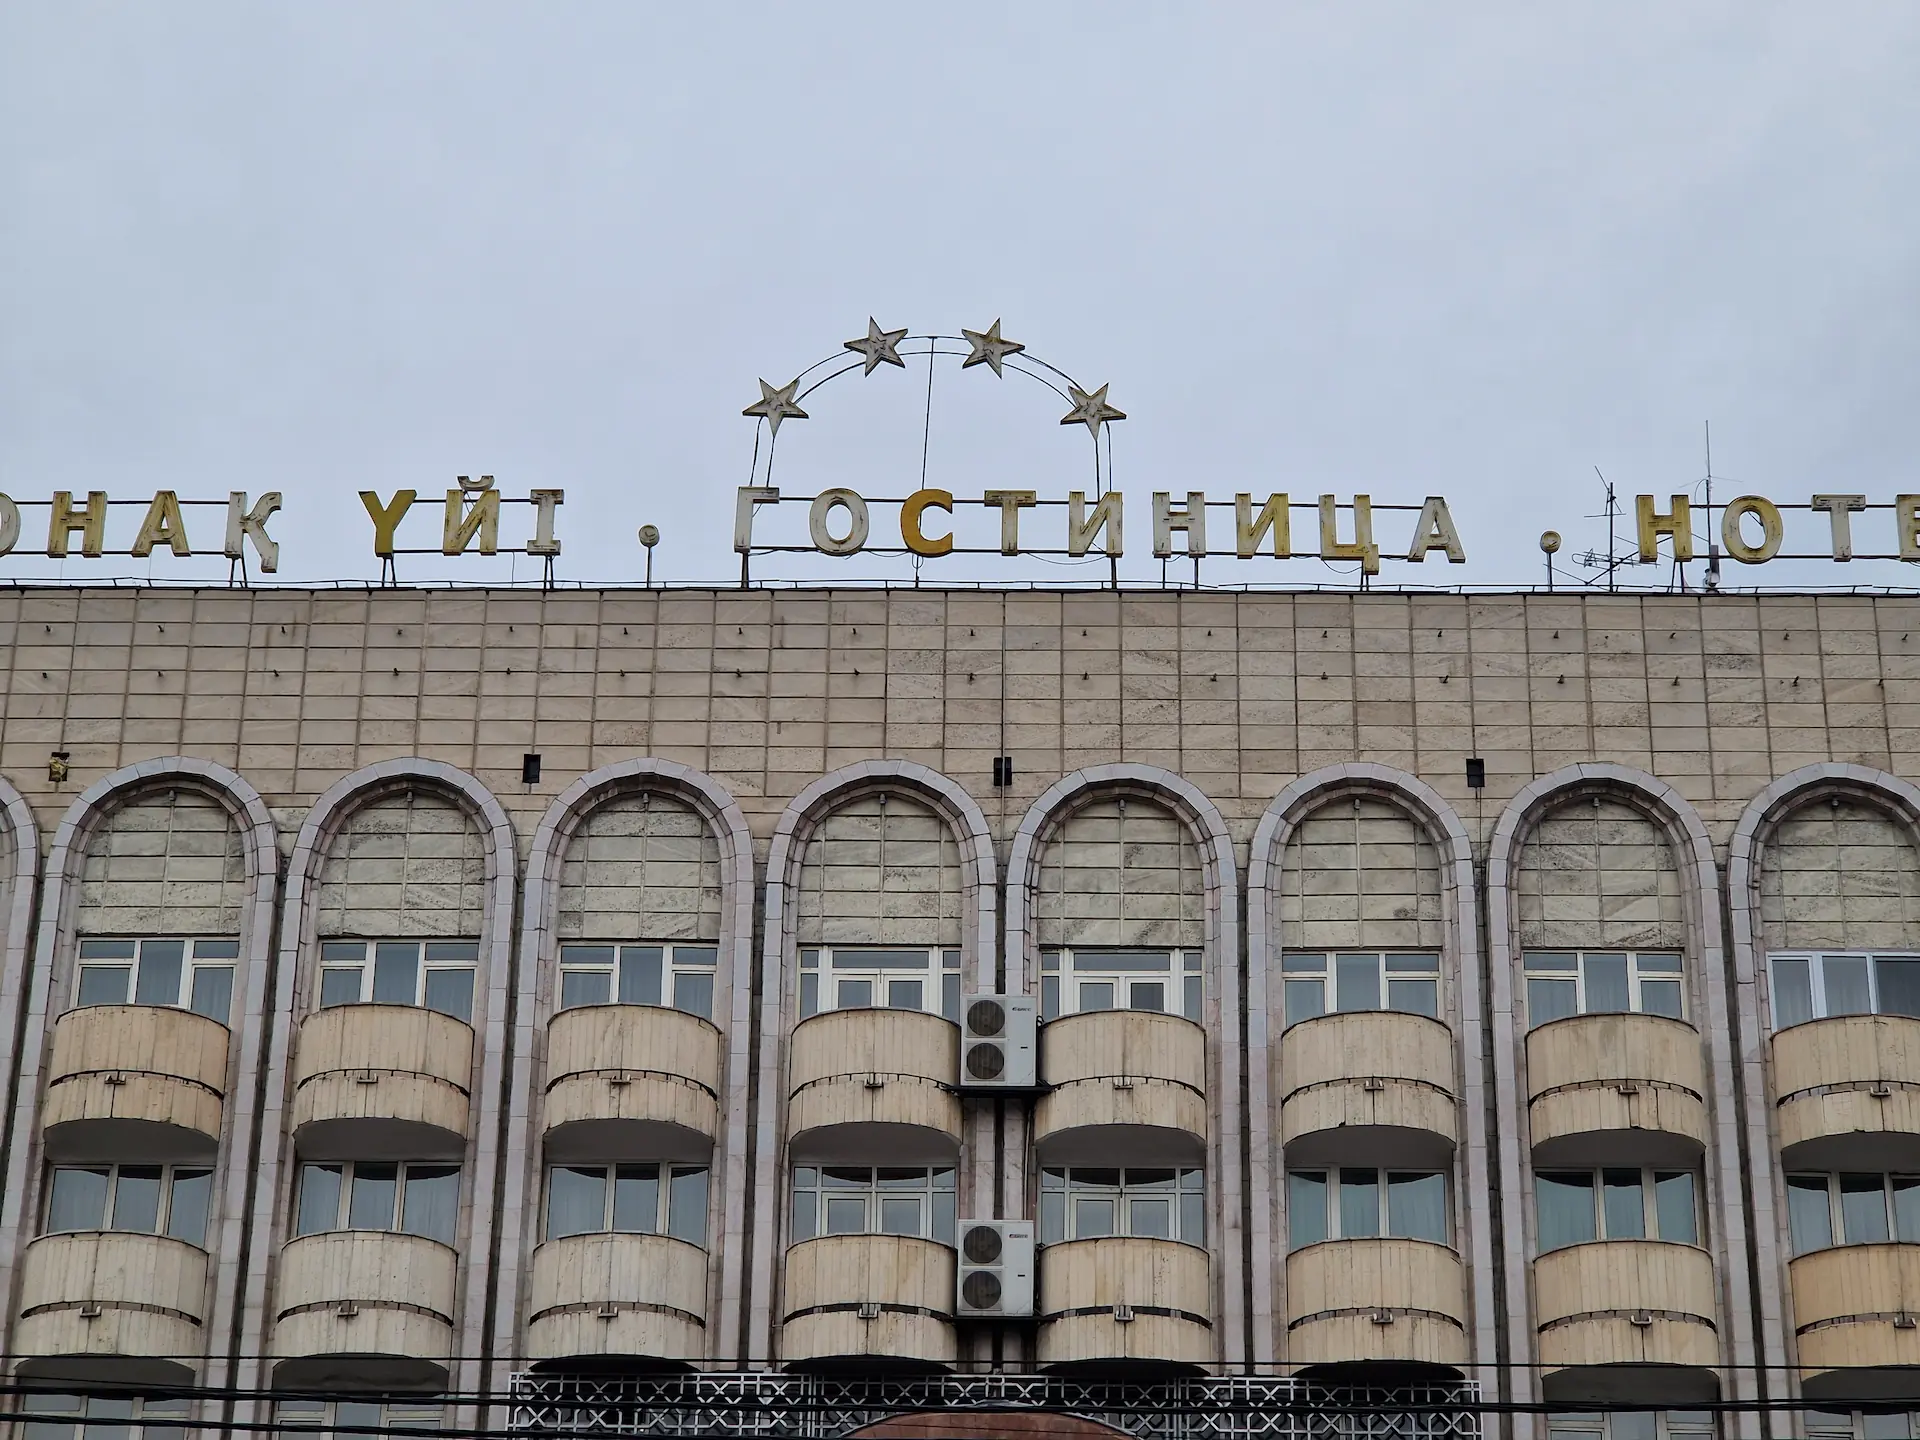 Détail d'un hôtel, la façade est entièrement en béton et adornée de petits balcons ronds, le nom de l'hôtel est indiqué en lettres décolorées sur le toit